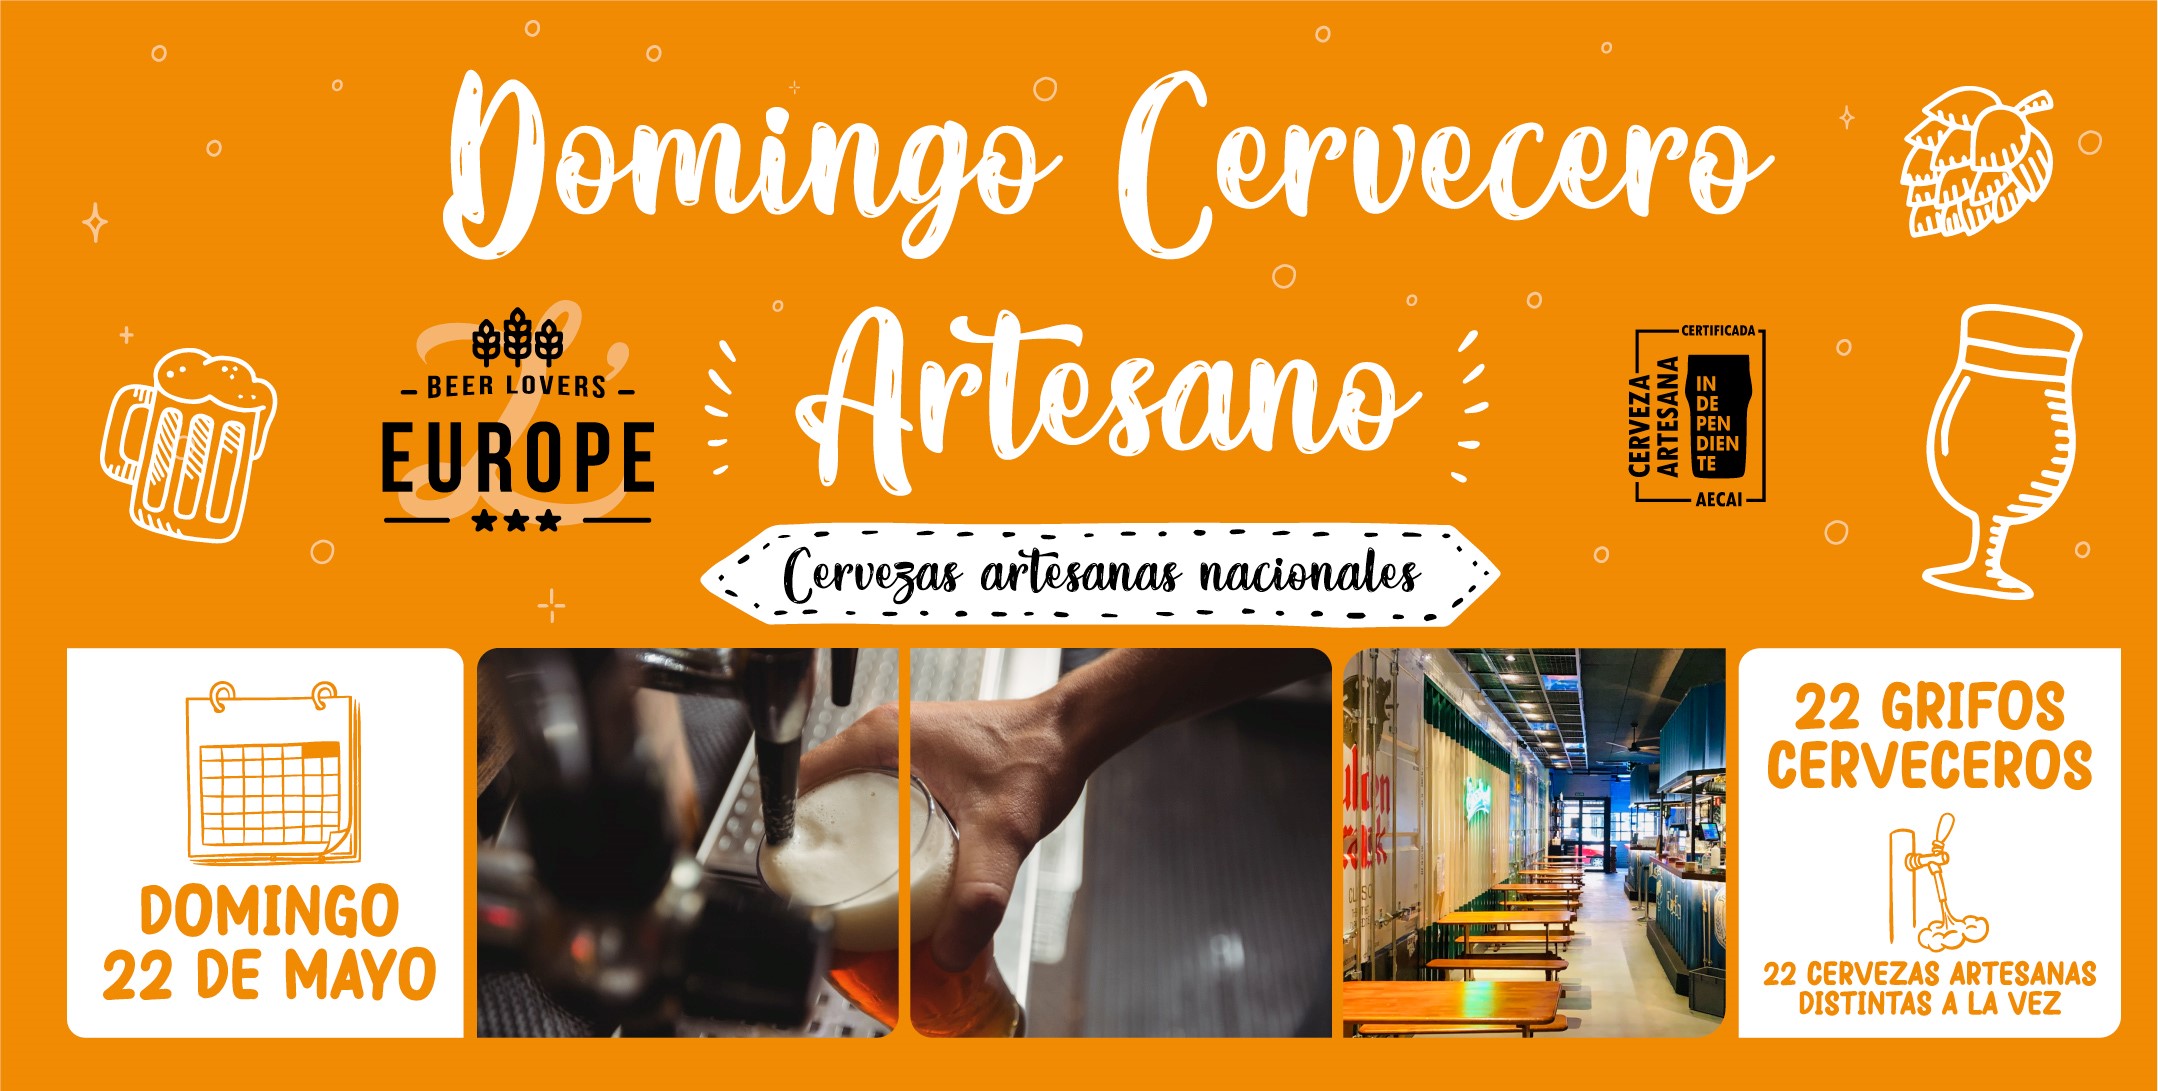 22 grifos para 22 cervezas artesanas en la jornada del ‘Domingo Cervecero Artesano’ organizado por L’ Europe y AECAI